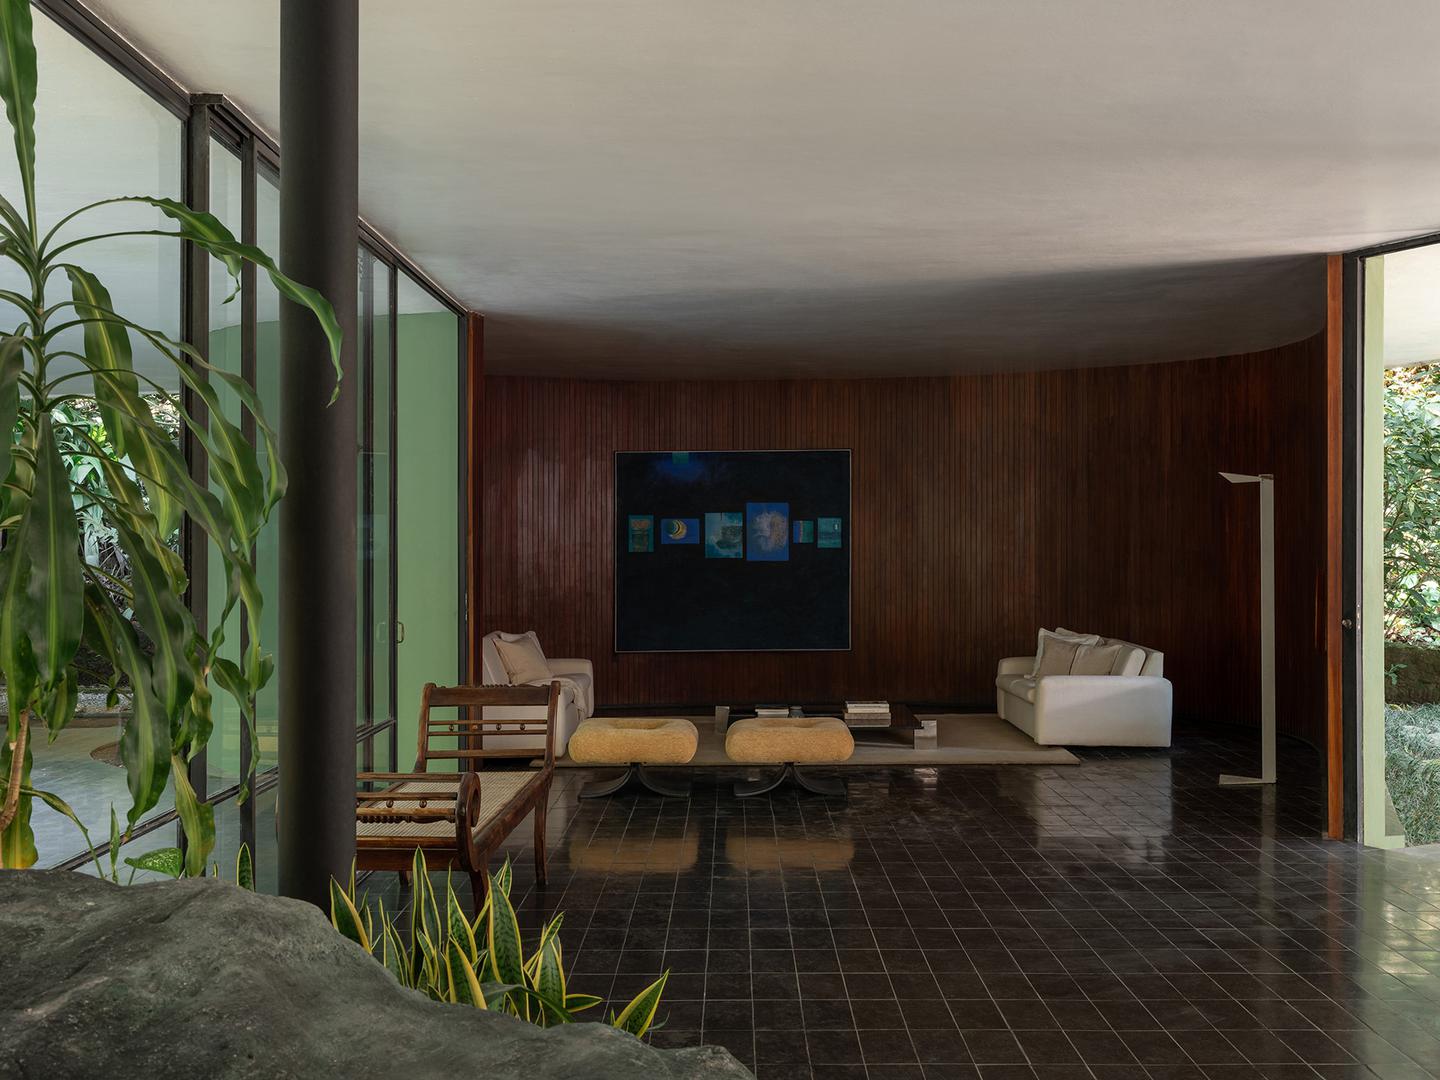 Kuća je impresivan primjer moderne brazilske arhitekture koja kombinira zakrivljene linije i asimetrične volumene